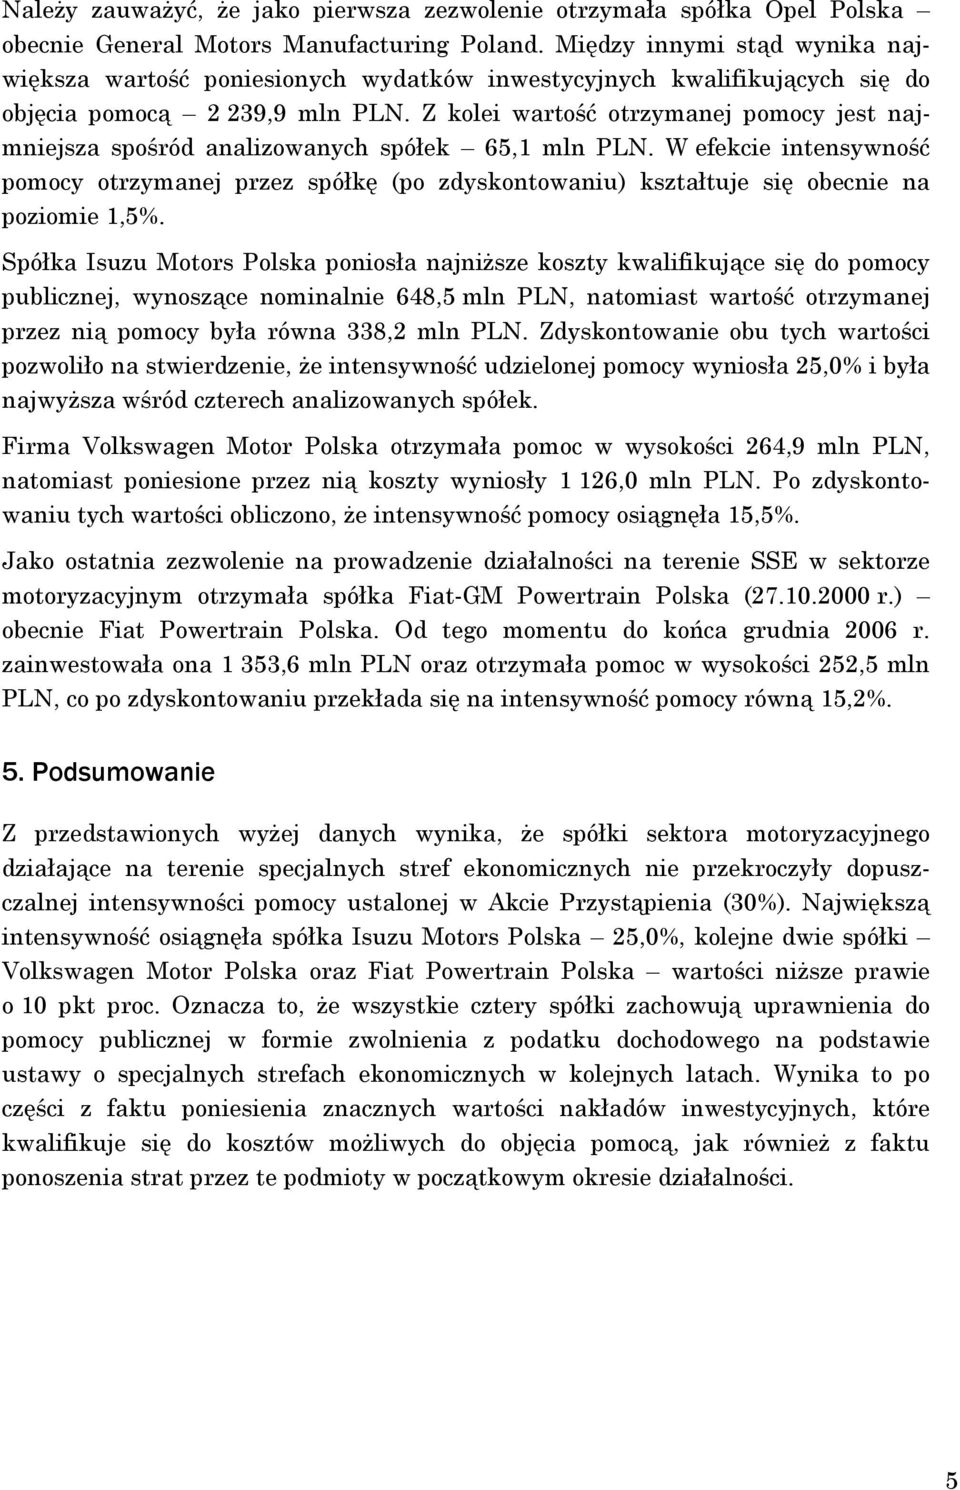 Z kolei wartość otrzymanej jest najmniejsza spośród analizowanych spółek 65,1 mln PLN. W efekcie intensywność otrzymanej przez spółkę (po zdyskontowaniu) kształtuje się obecnie na poziomie 1,5%.